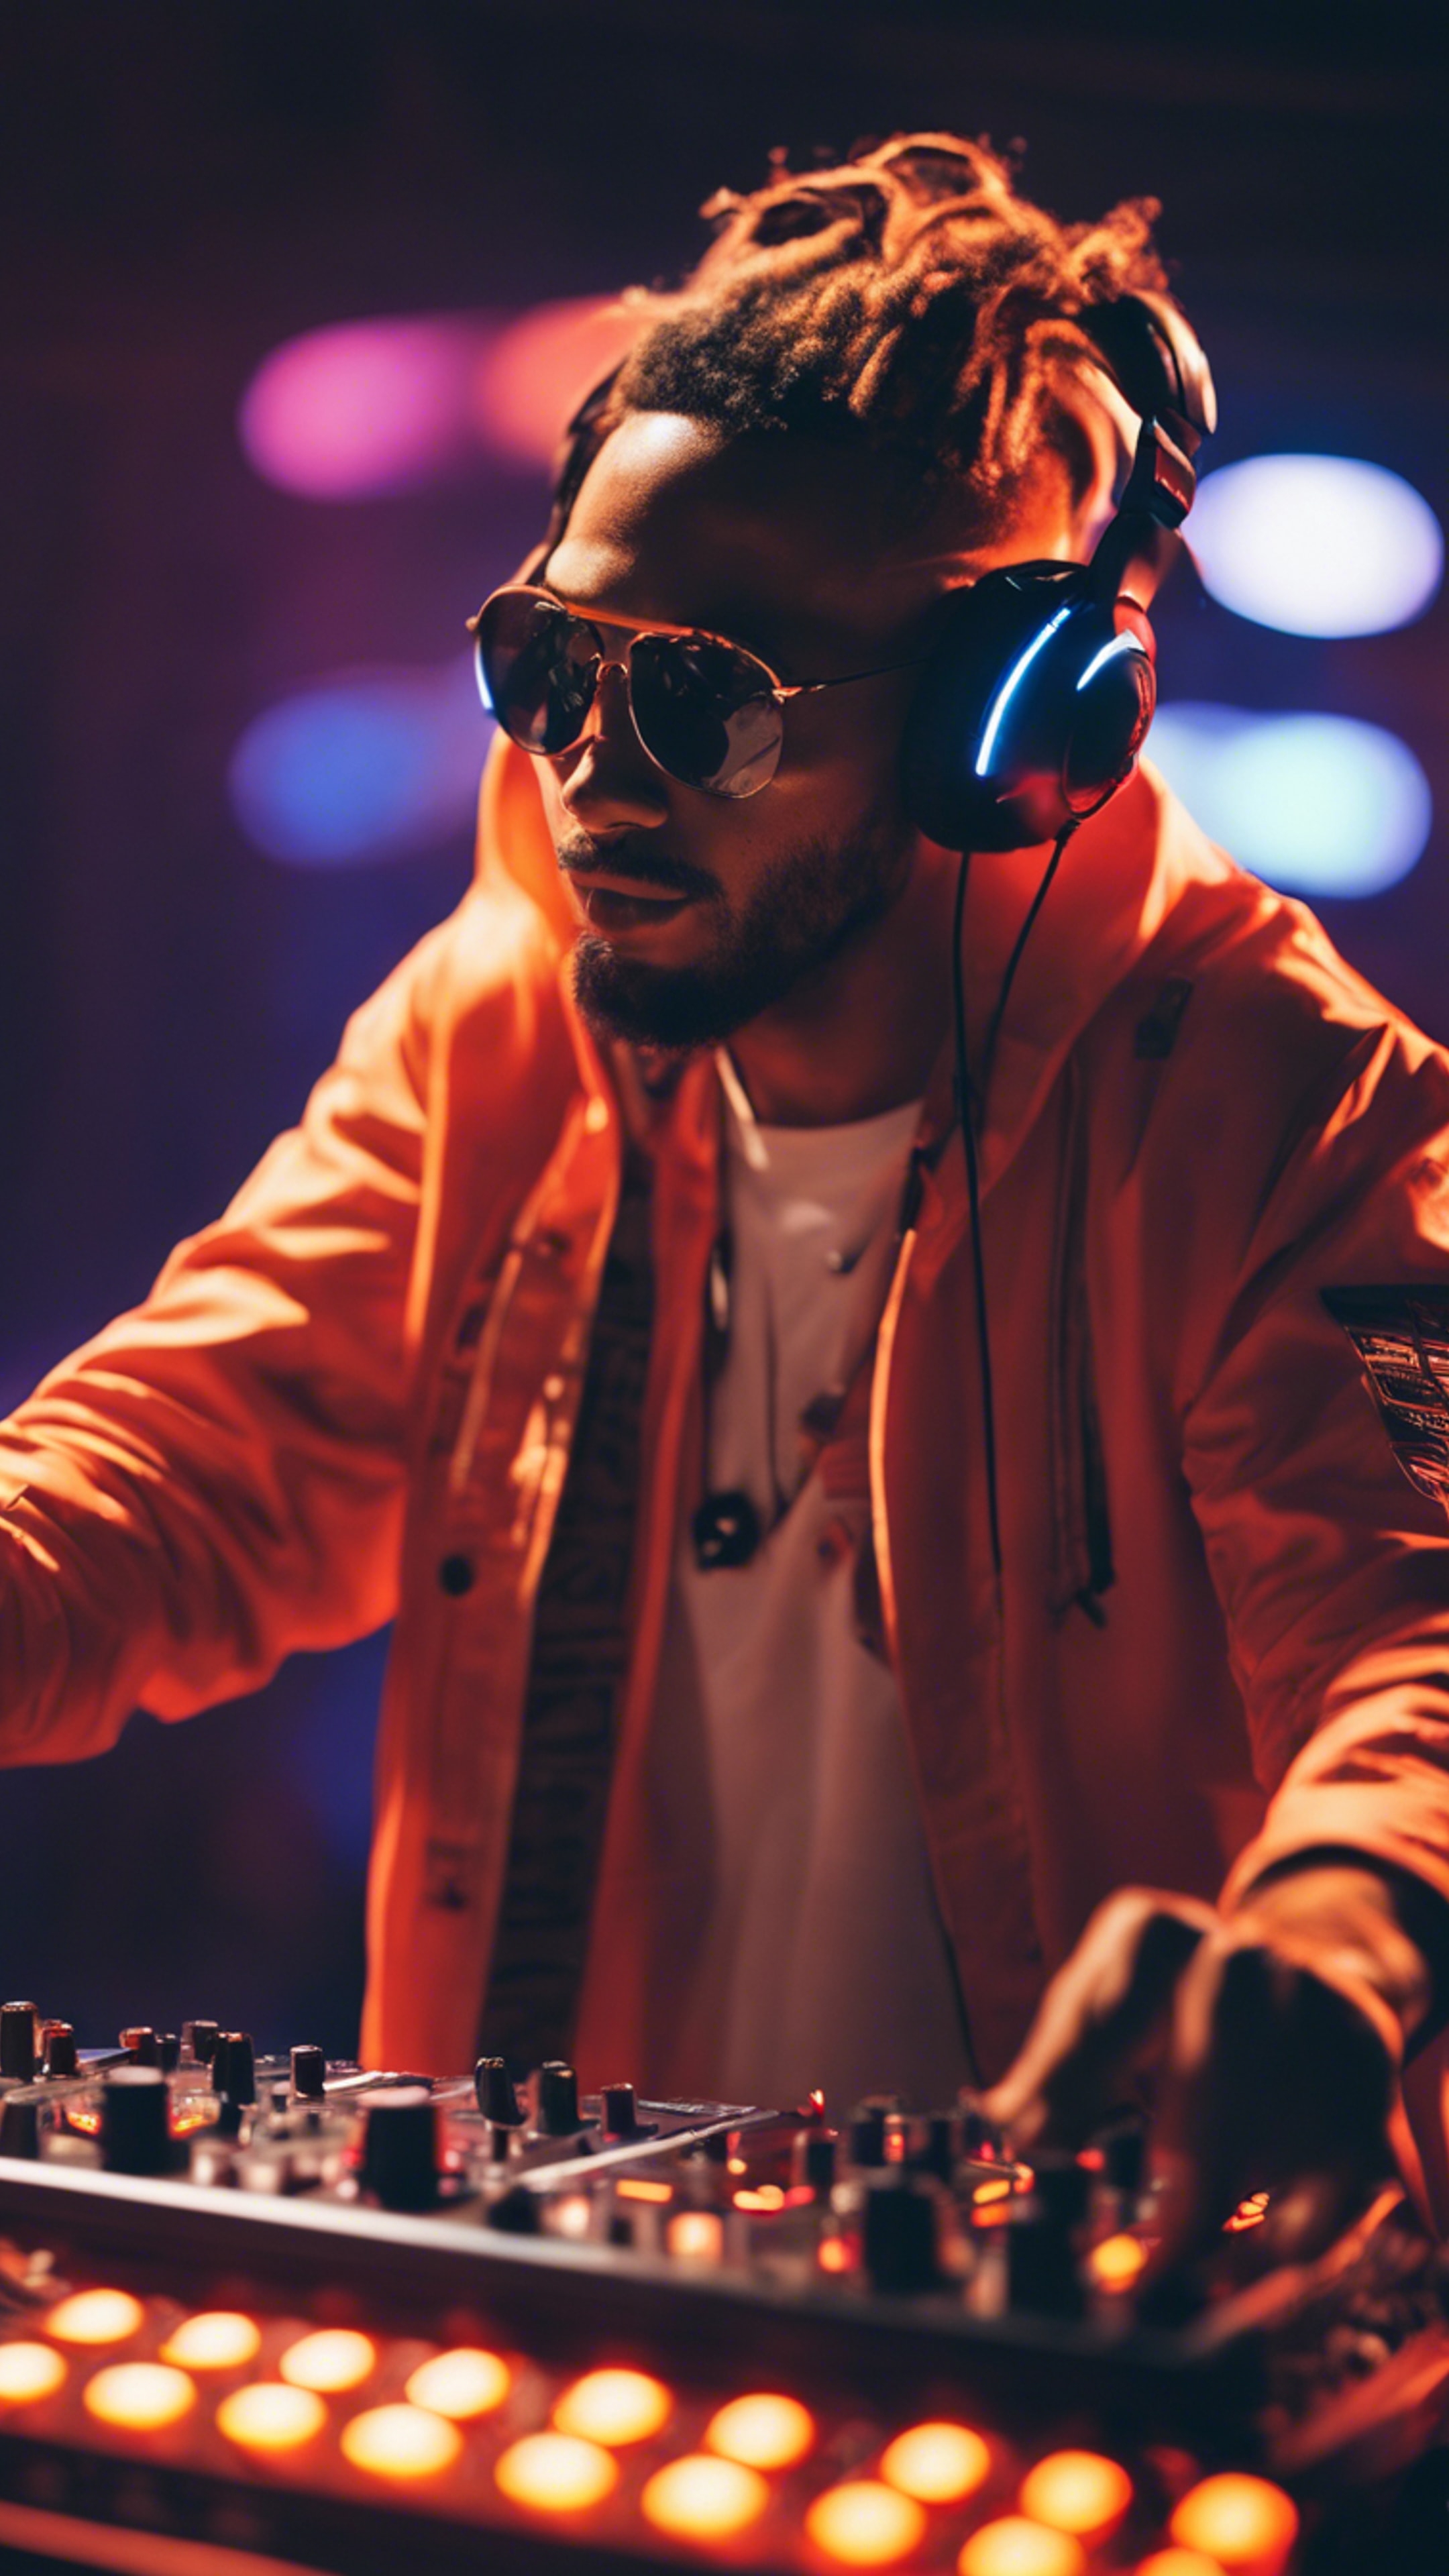 An energetic DJ at a music festival wearing neon orange headphones. 벽지[135547dc2eef4b3588bf]